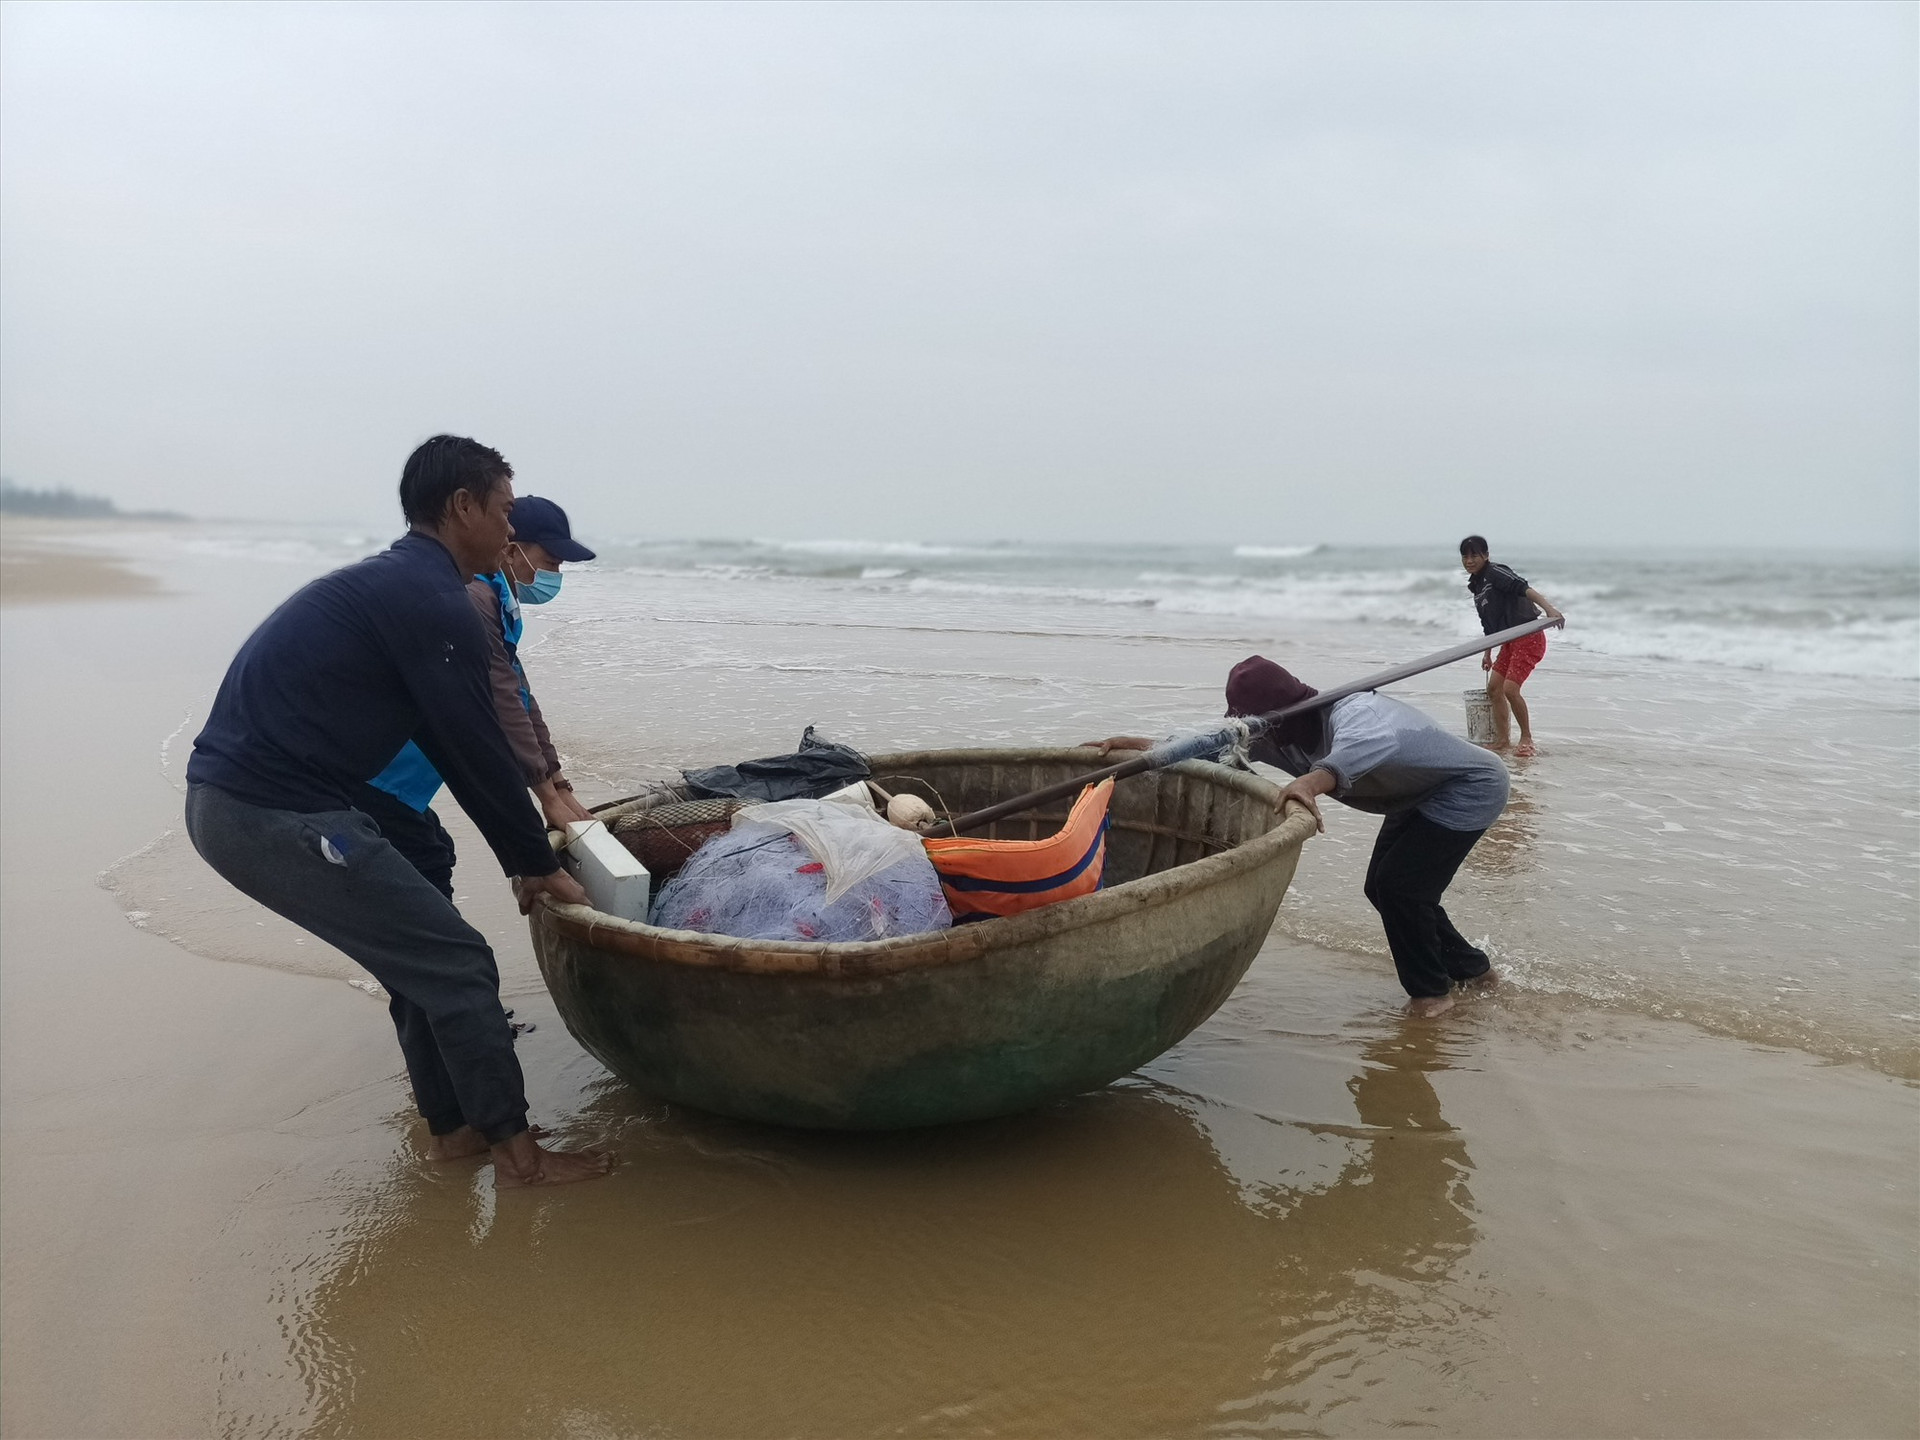 Ngư dân giúp nhau kéo thúng vào bờ để gỡ cá mắc lưới.